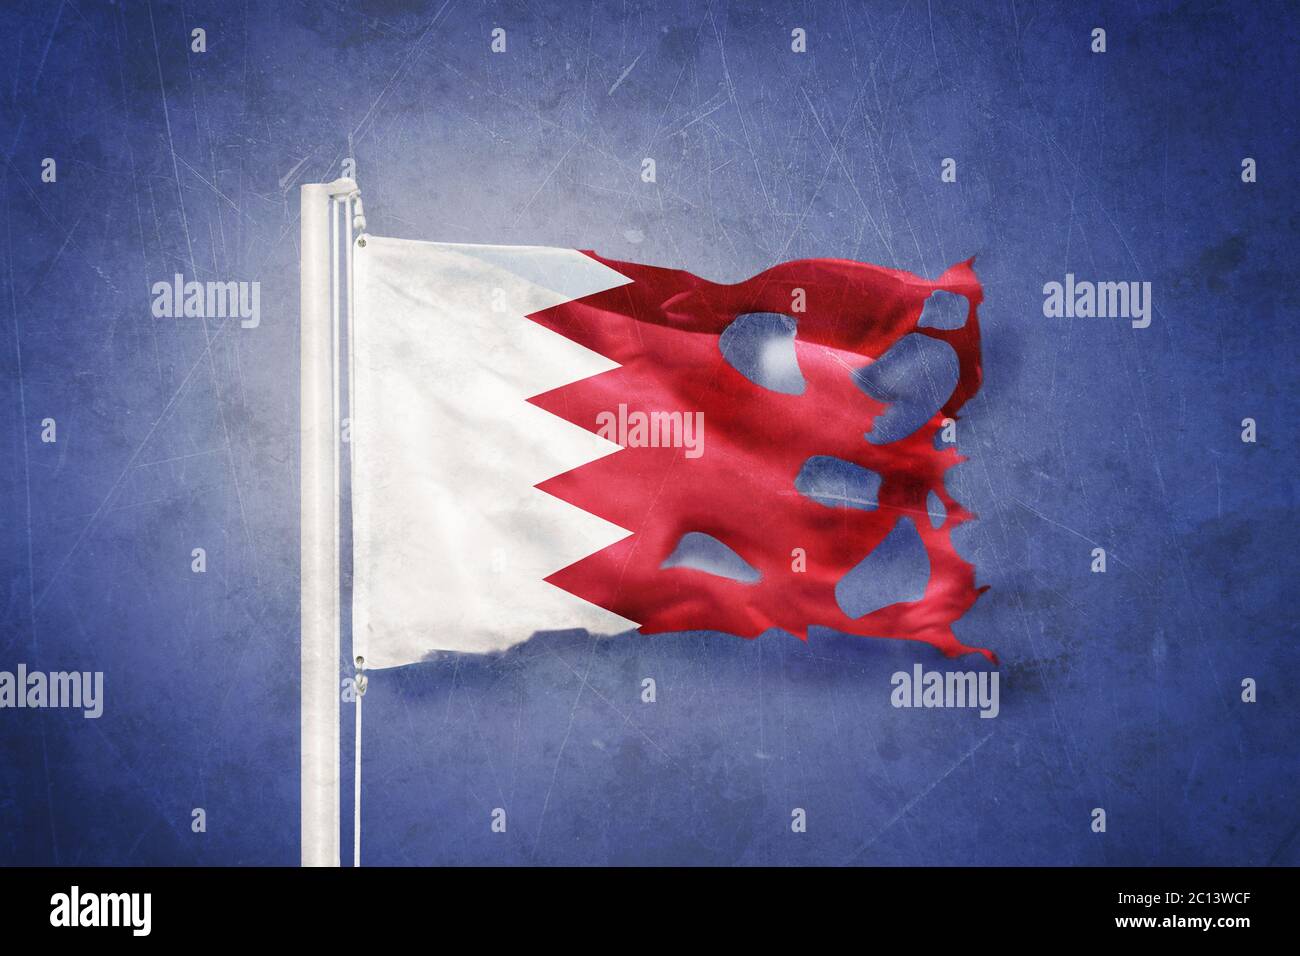 Flagge von Bahrain, die vor grunge Hintergrund fliegt Stockfoto